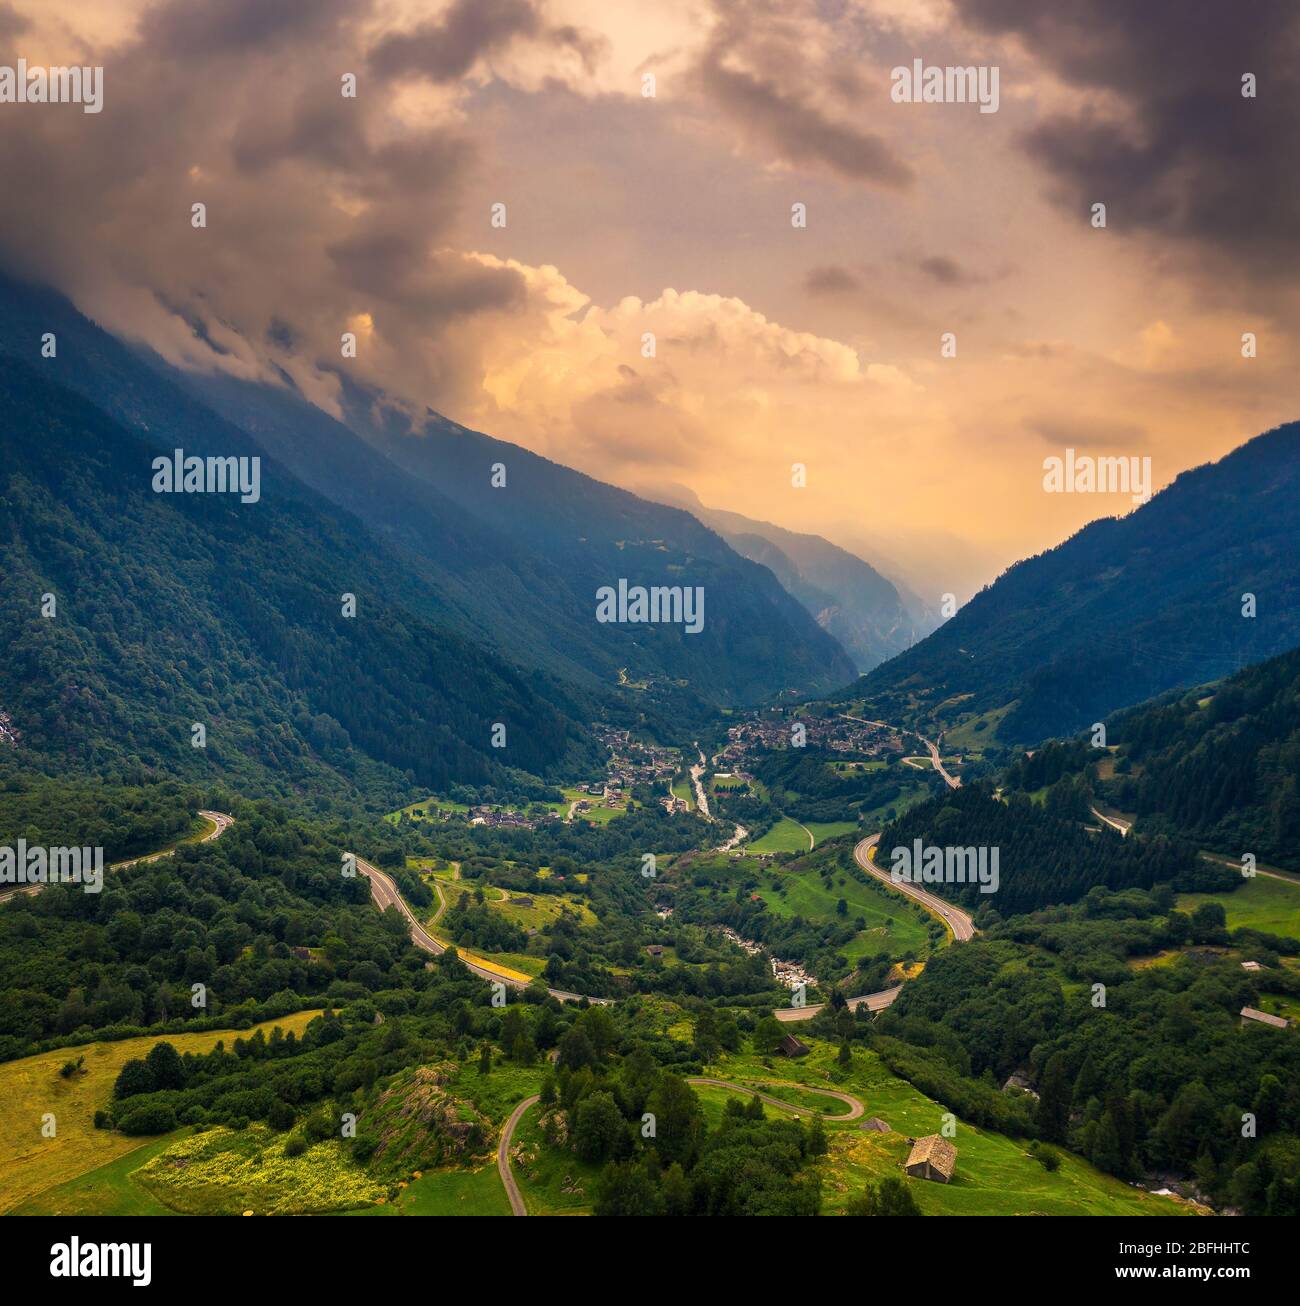 Aerial view of the San Bernardino mountain pass in the Swiss Alps, Switzerland Stock Photo